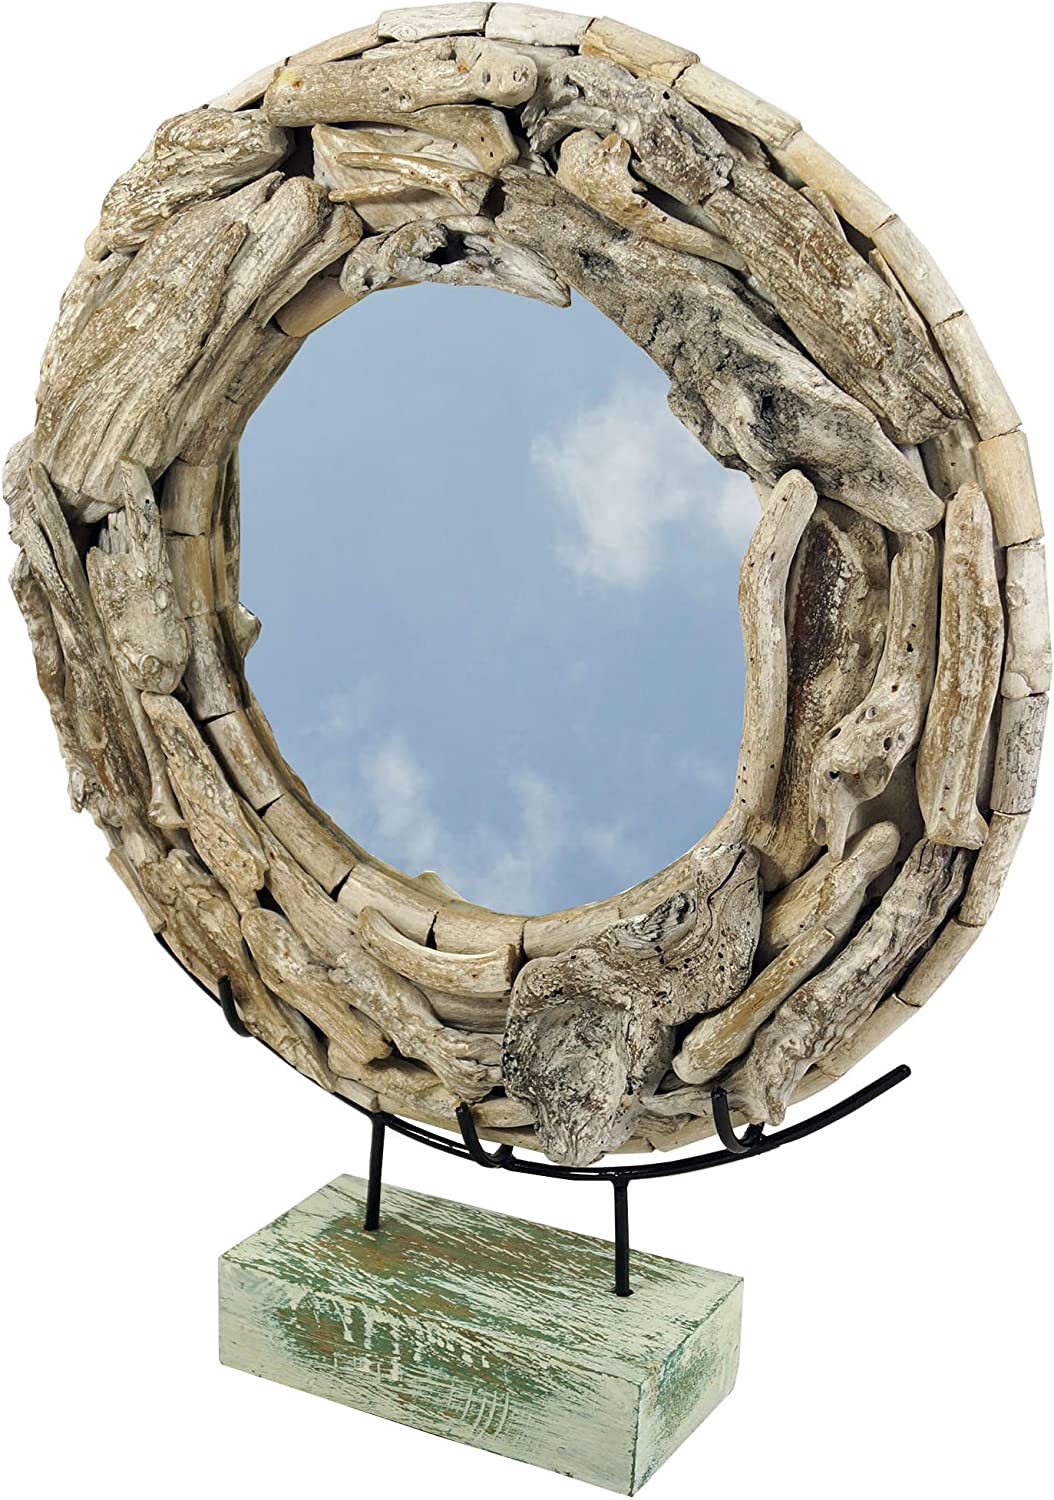 GURU SHOP Round Driftwood Mirror, Decorative Mirror with Driftwood Pieces in Frame, Diameter 50 cm, Brown, Mirror